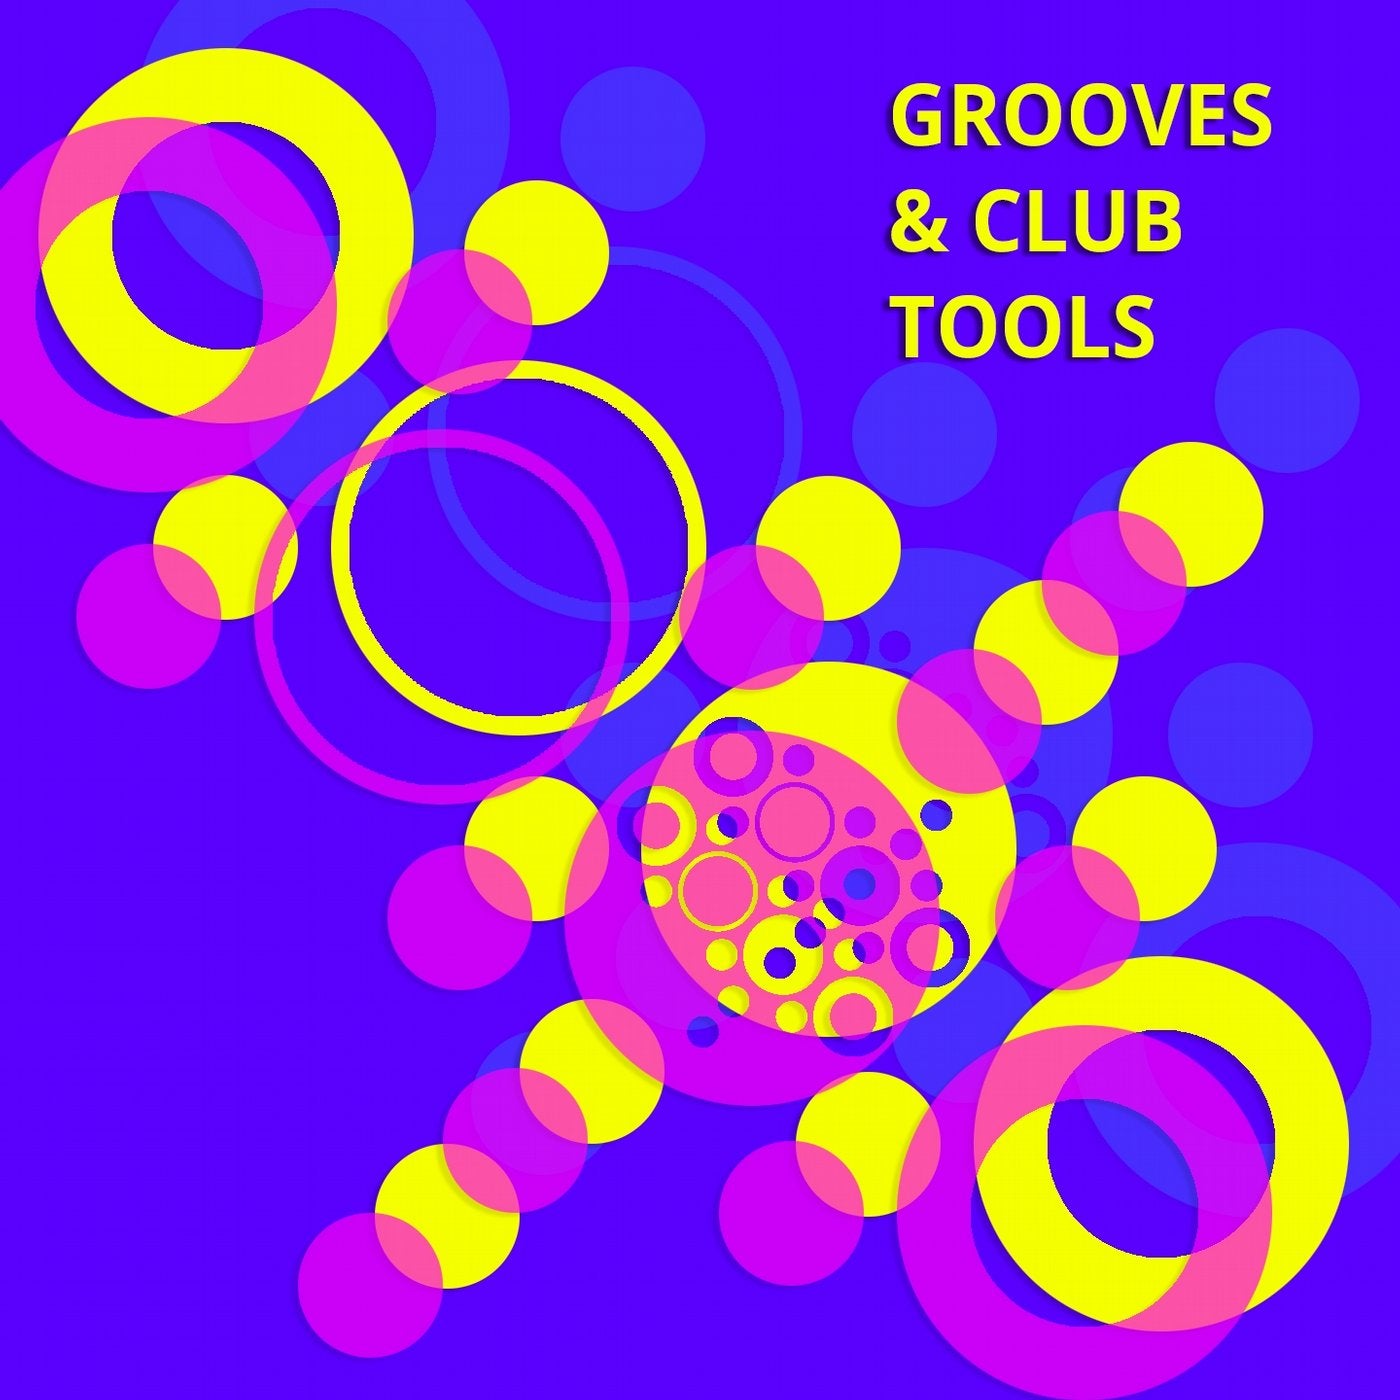 Grooves & Club Tools